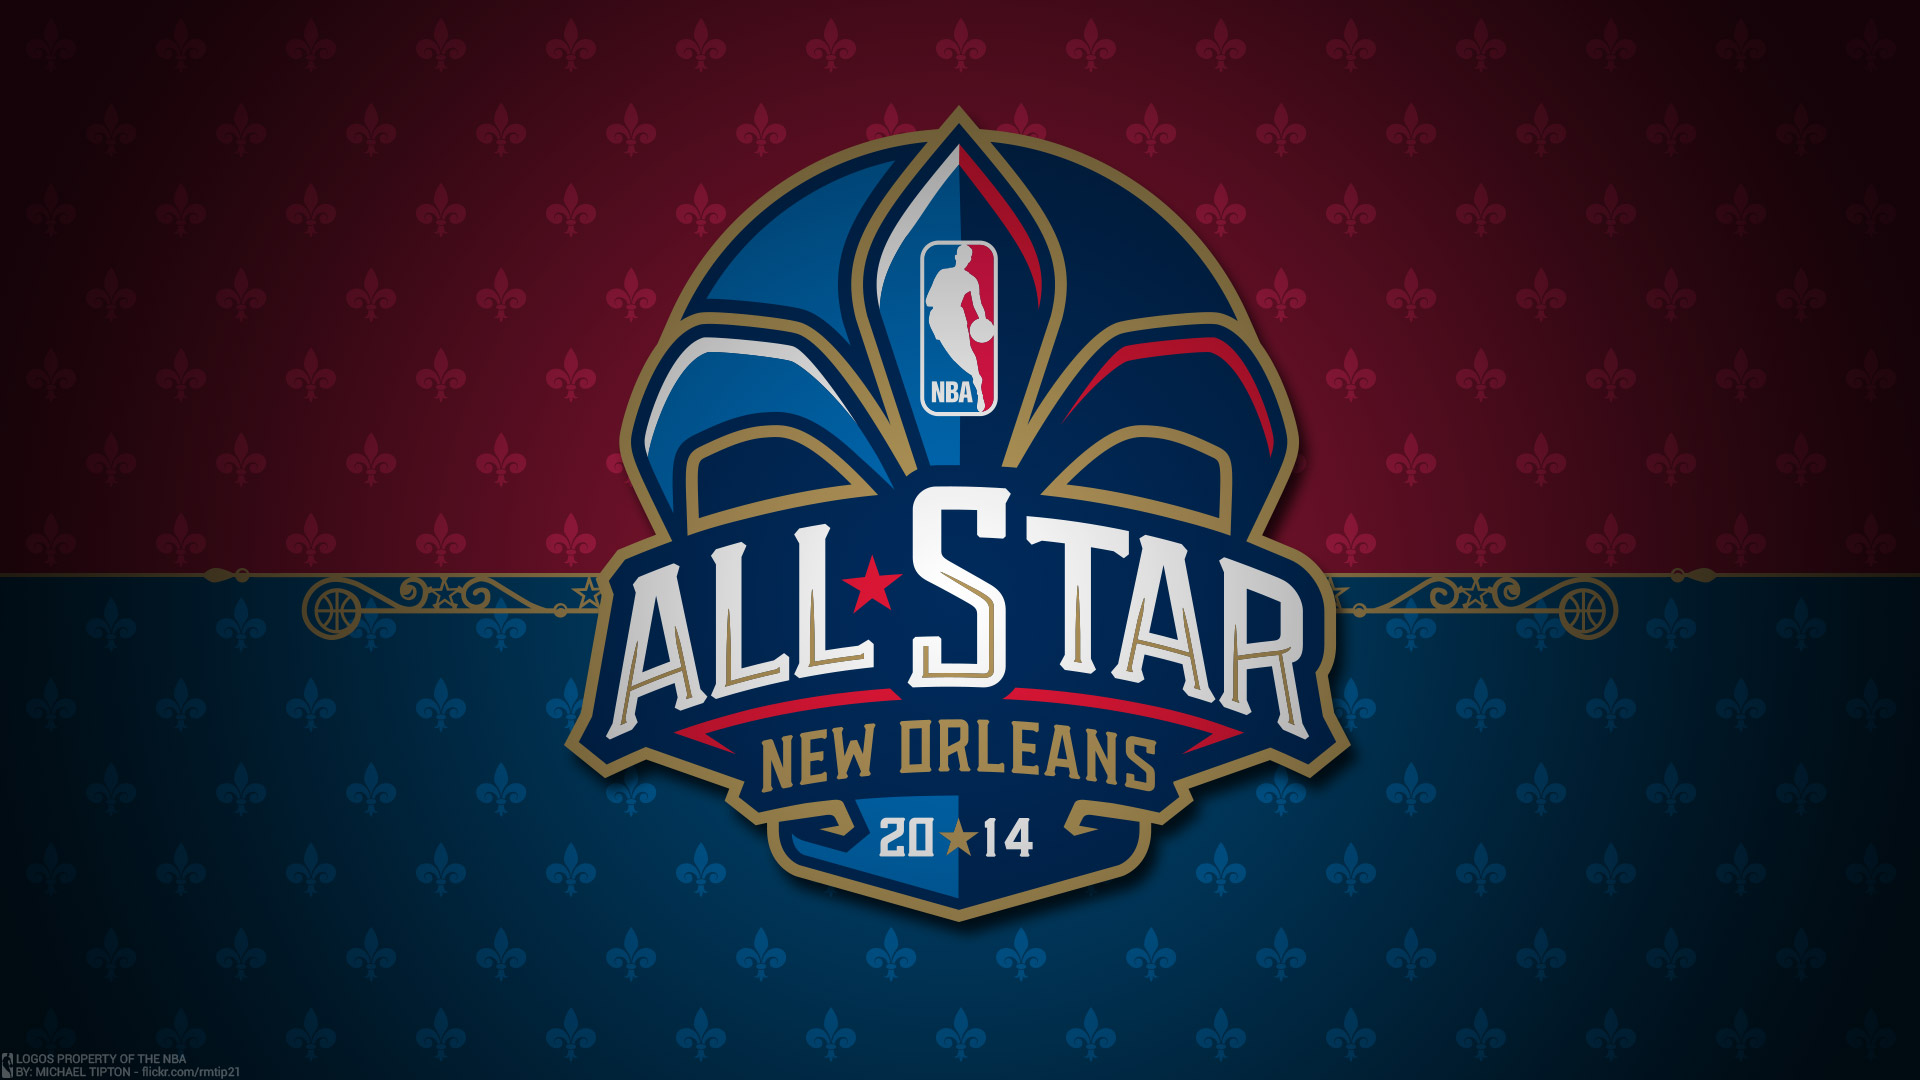 2014 NBA All-Star Logo 1920×1080 Wallpaper | Basketball Wallpapers at ...